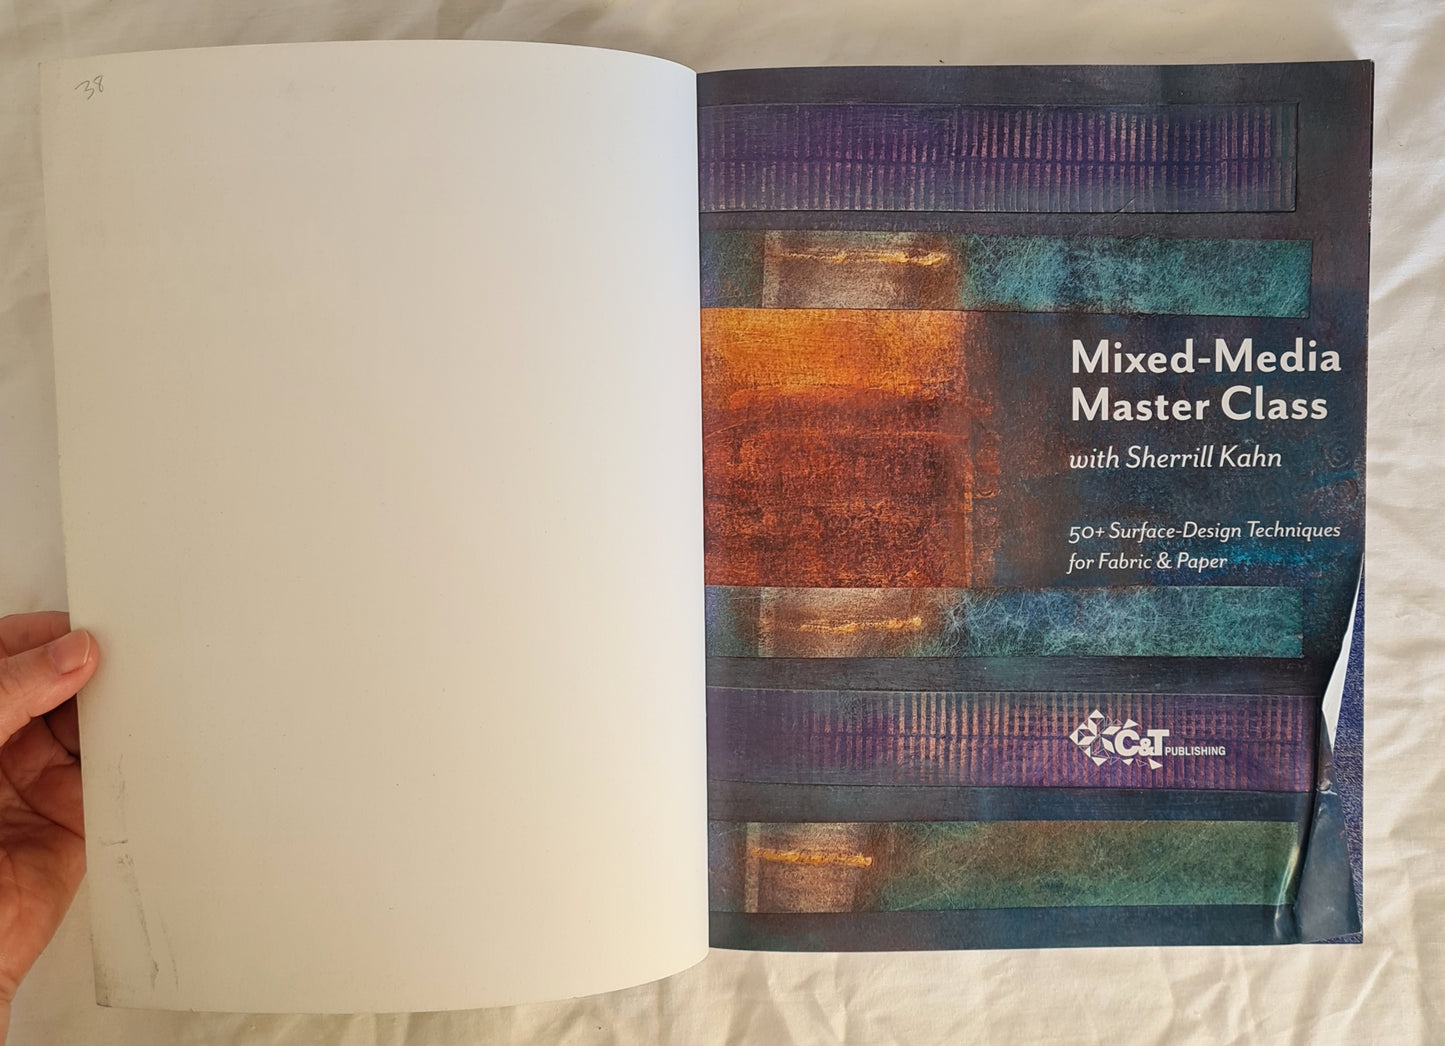 Mixed-Media Master Class by Sherrill Kahn